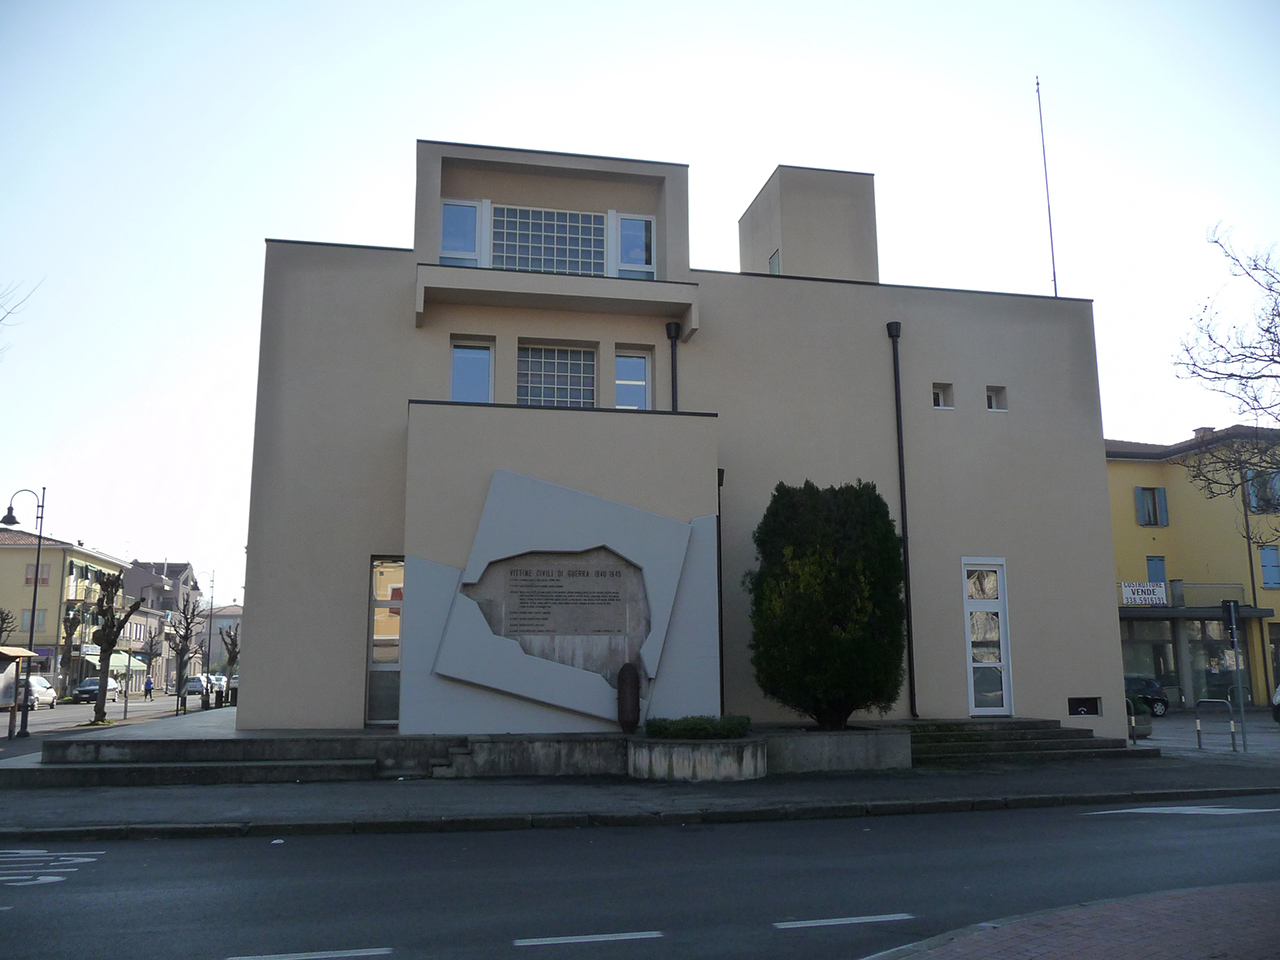 Biblioteca comunale G. Marchesi (biblioteca, comunale) - Battaglia Terme (PD) 